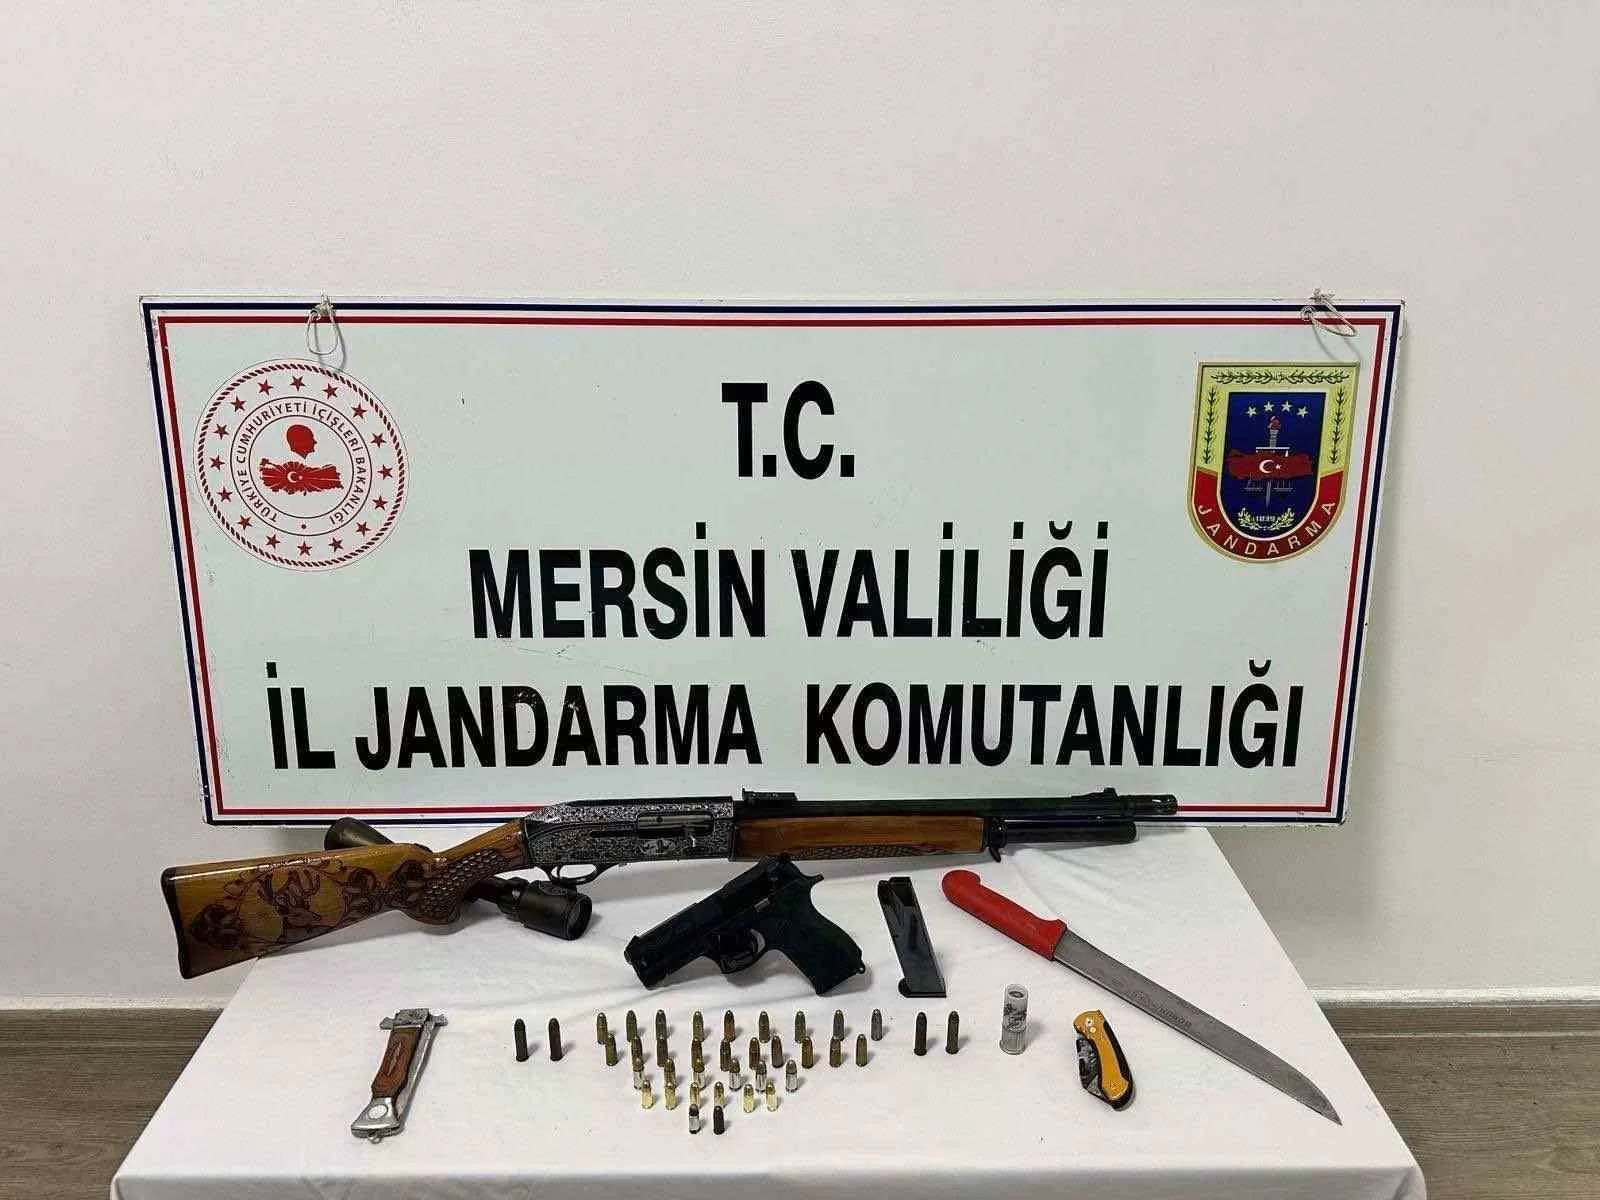 Mersin’de Silah Kaçakçılığına Yönelik Düzenlenen Operasyonda 1 Silah Kuşkulu Mevt Olayının Silahı Çıktı